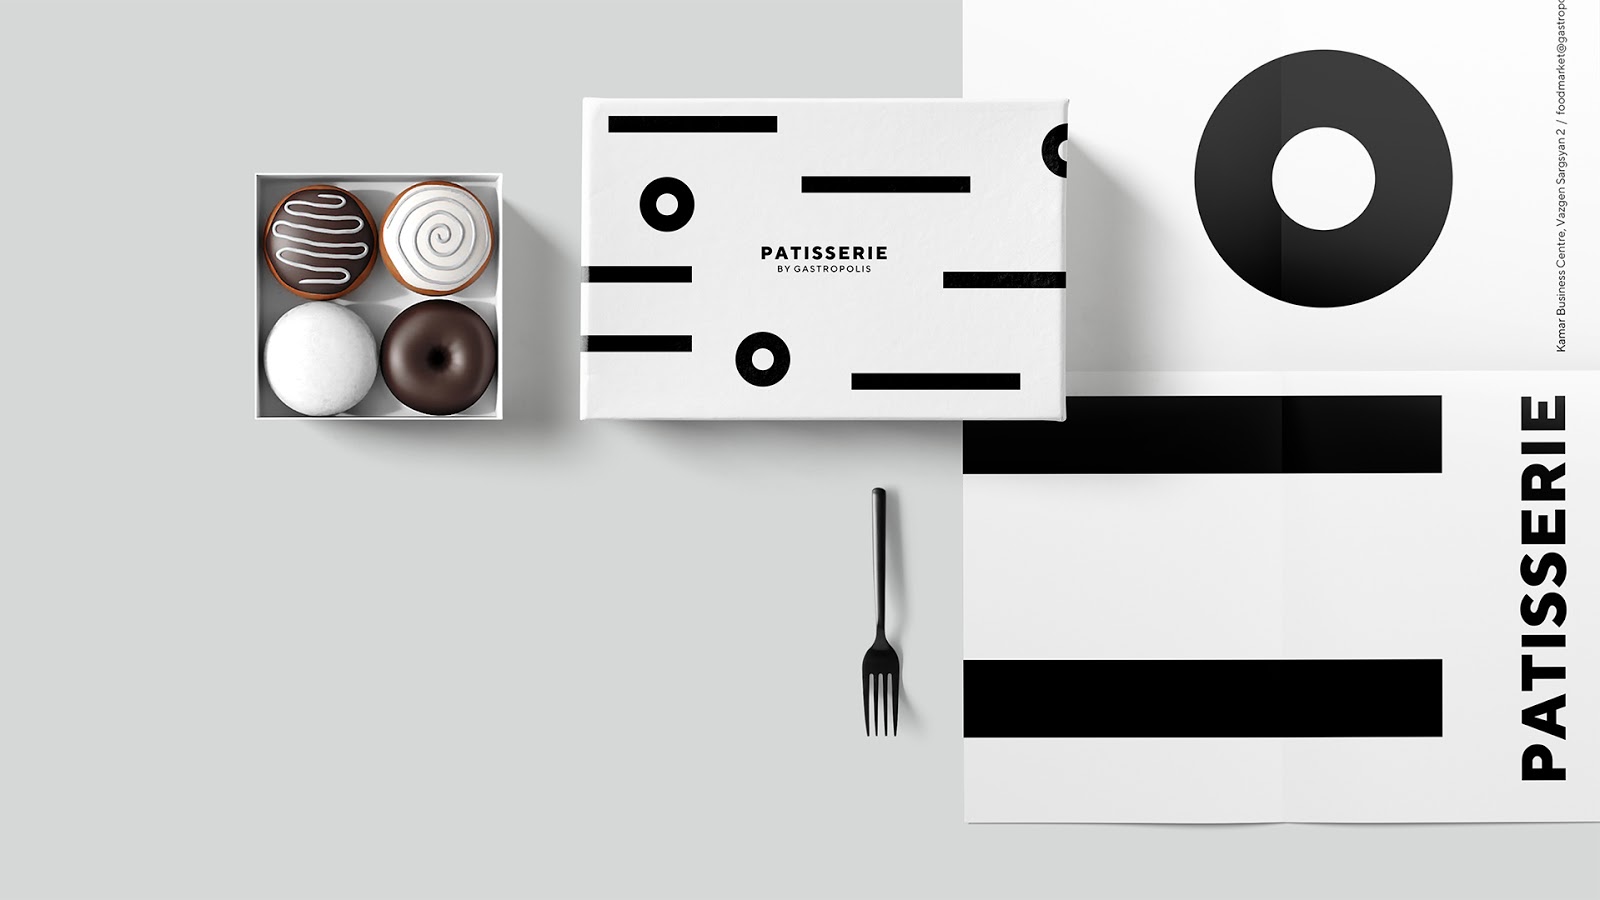 快餐简餐甜品面包咖啡西安oe欧亿体育app官方下载
品牌策划包装设计VI设计logo设计